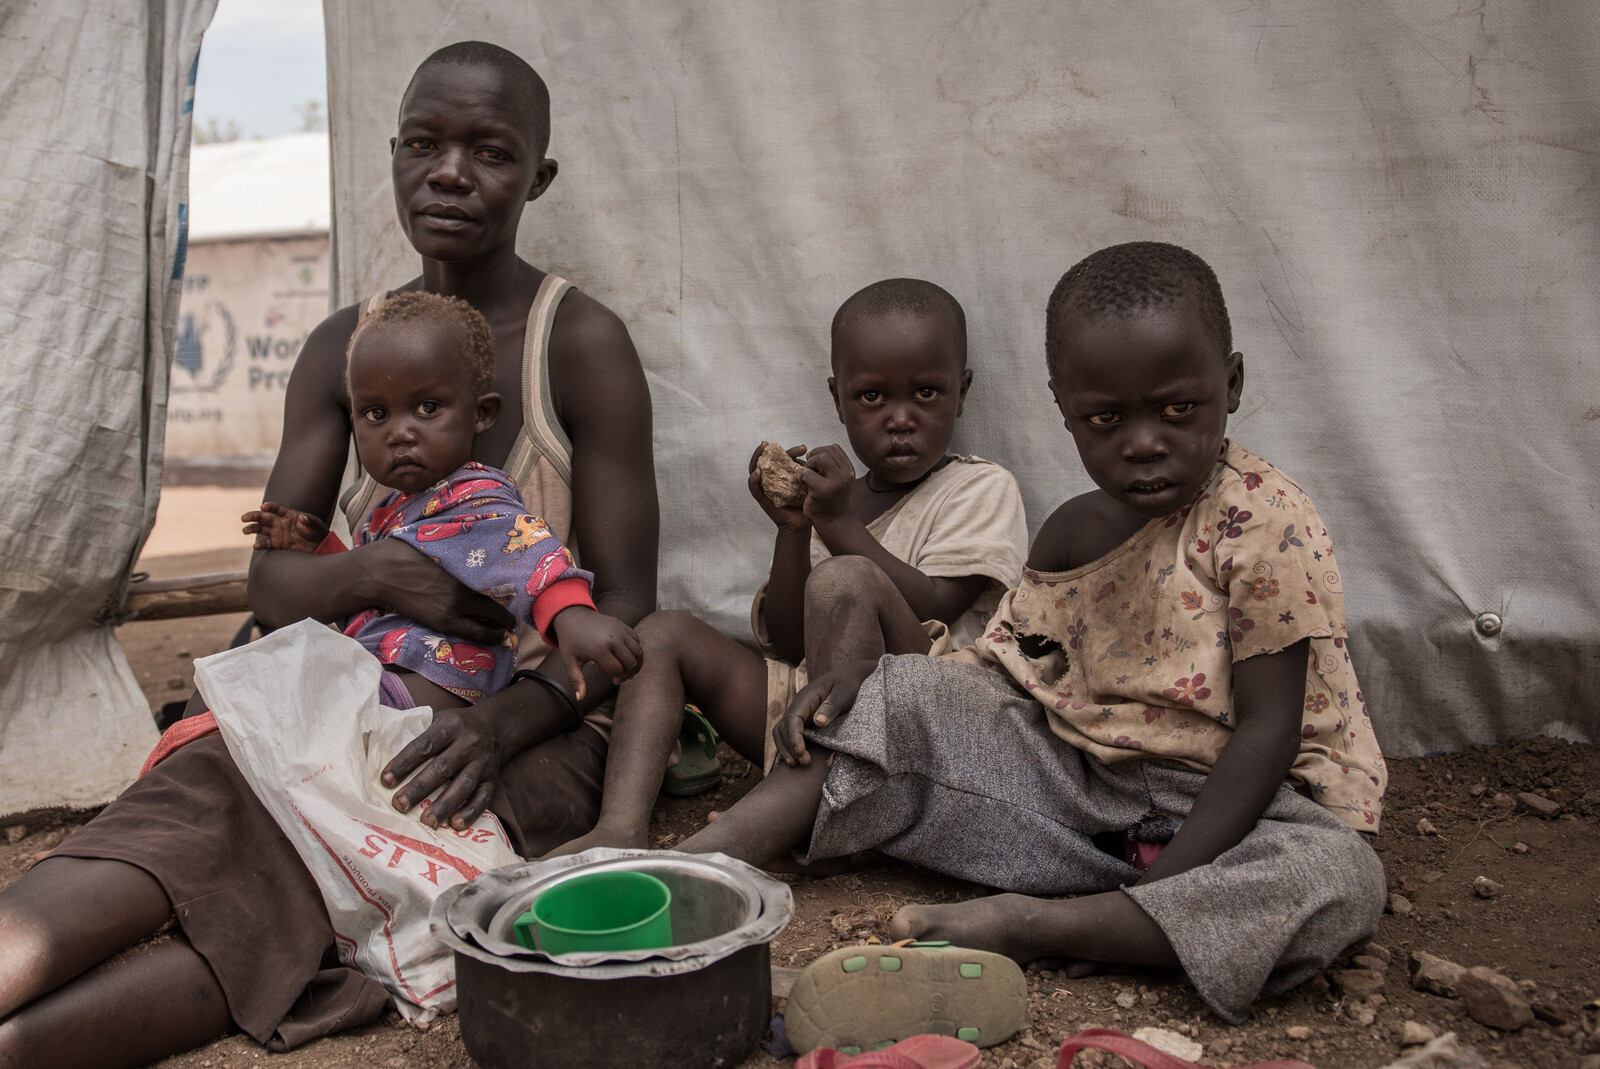 Viele Menschen, die zu Flüchtlingen wurden, leben in Armut - wie diese Familie in einem Flüchtlingscamp in Uganda